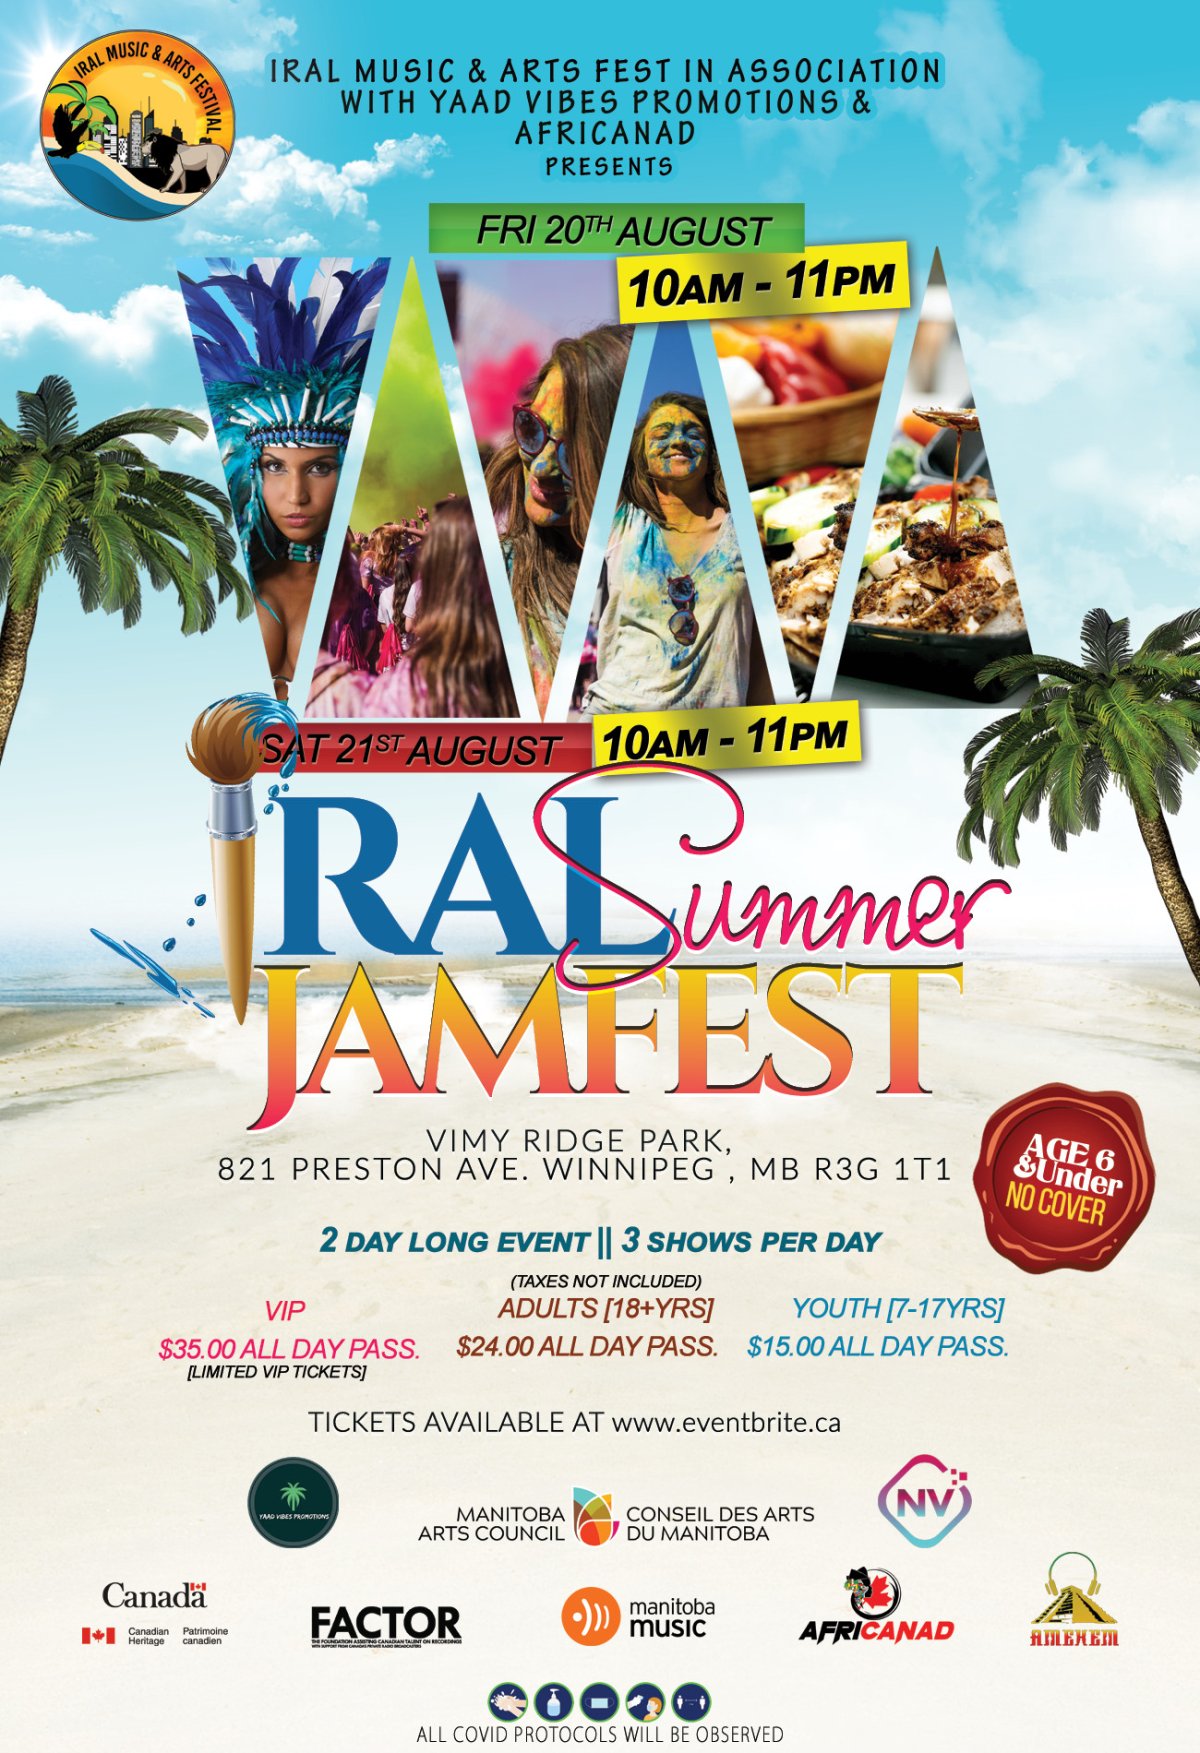 IRAL Summer Jam Fest GlobalNews Events